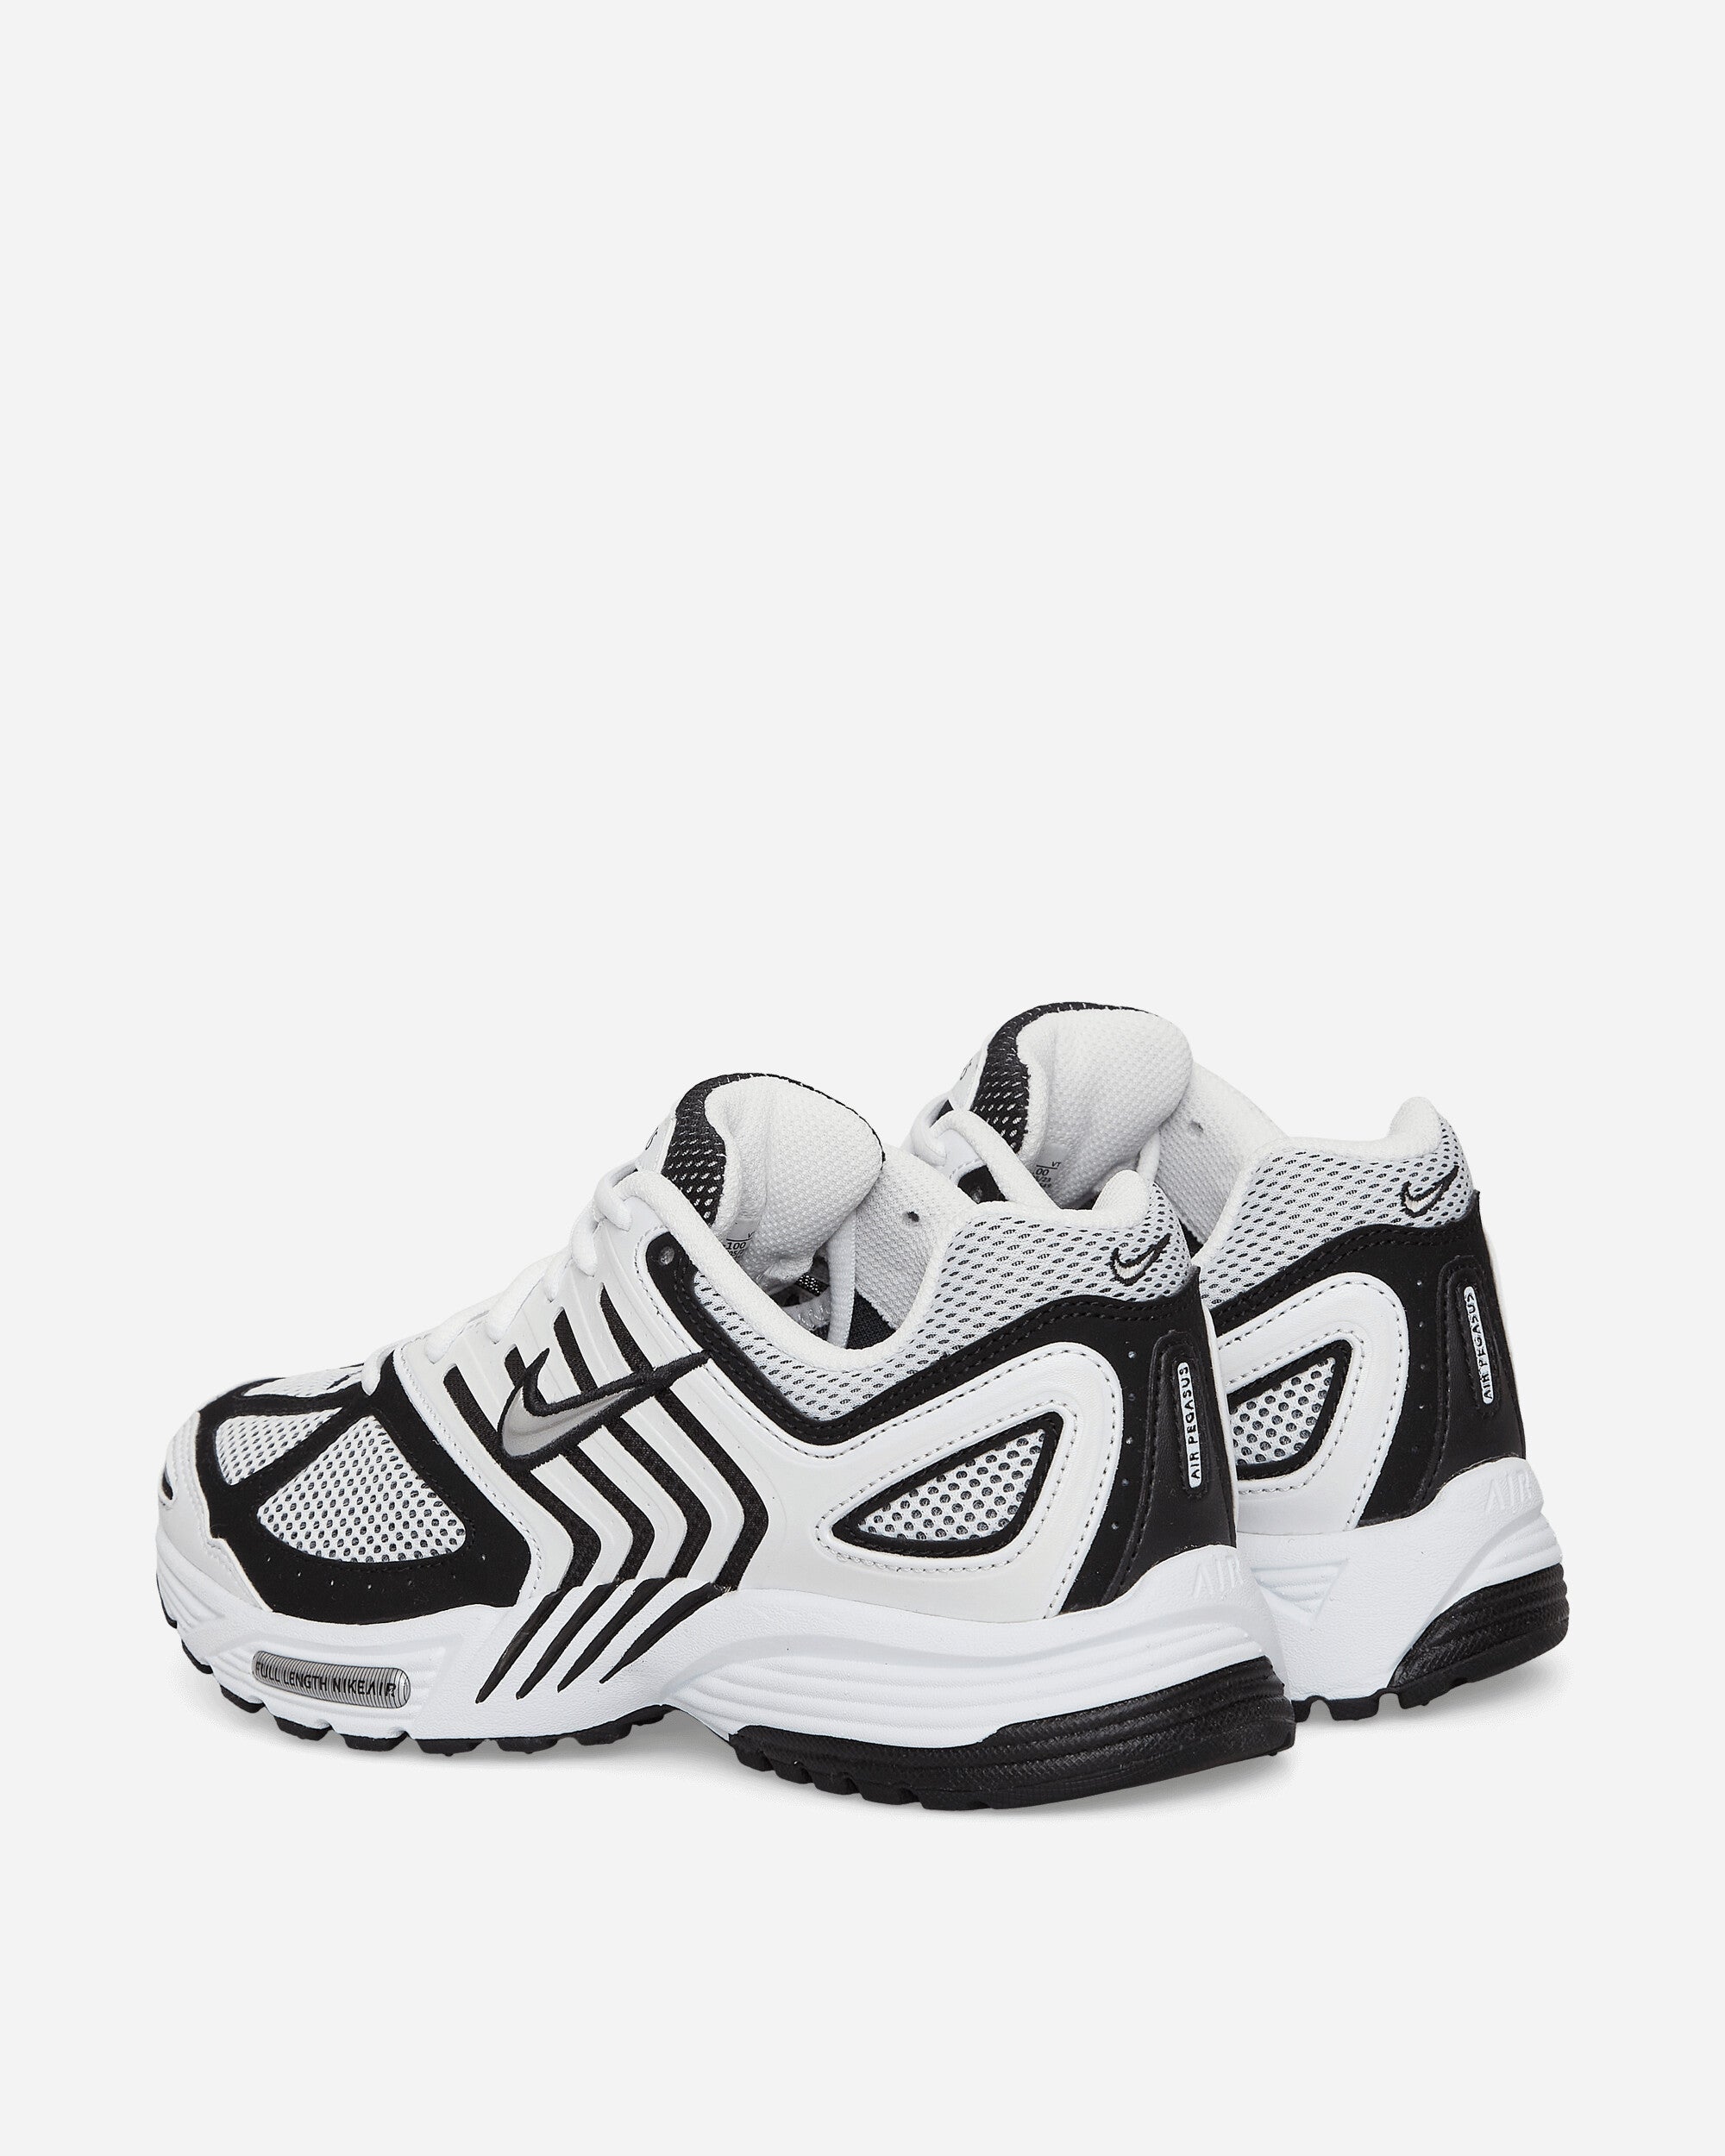 Nike Nike Air Peg 2K5 White/Metallic Silver-Black Sneakers Low FJ1909-100